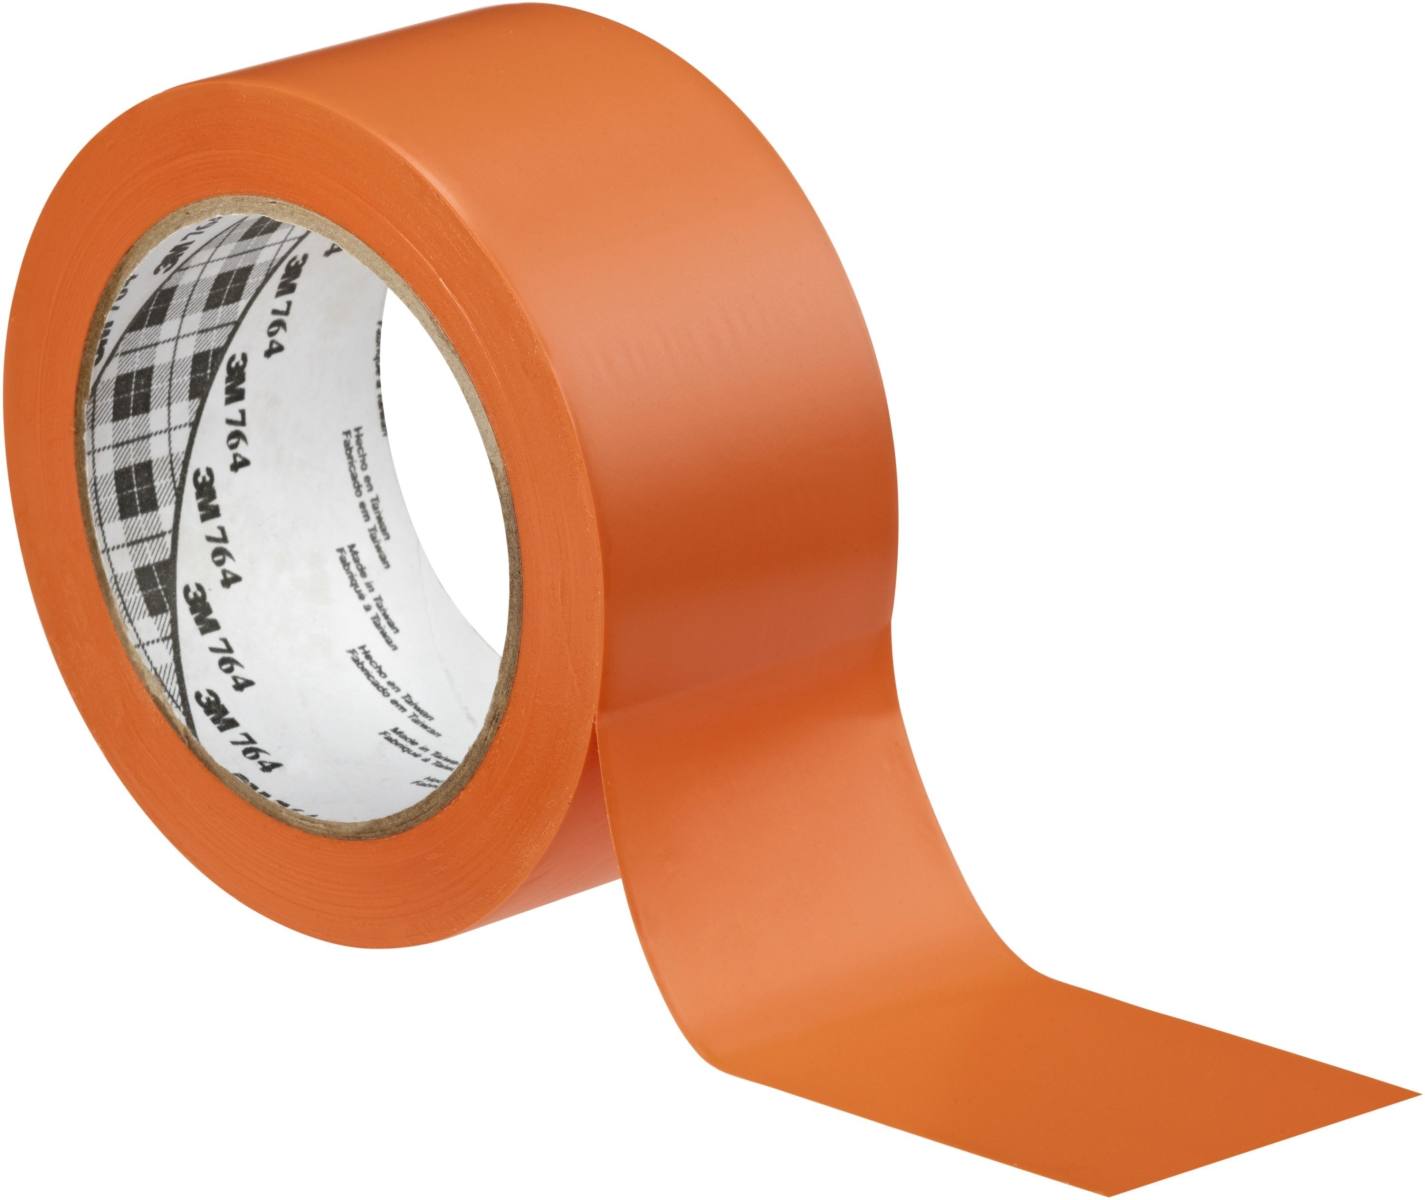 3M ruban adhésif polyvalent en PVC 764, orange, 50 mm x 33 m, emballage individuel pratique